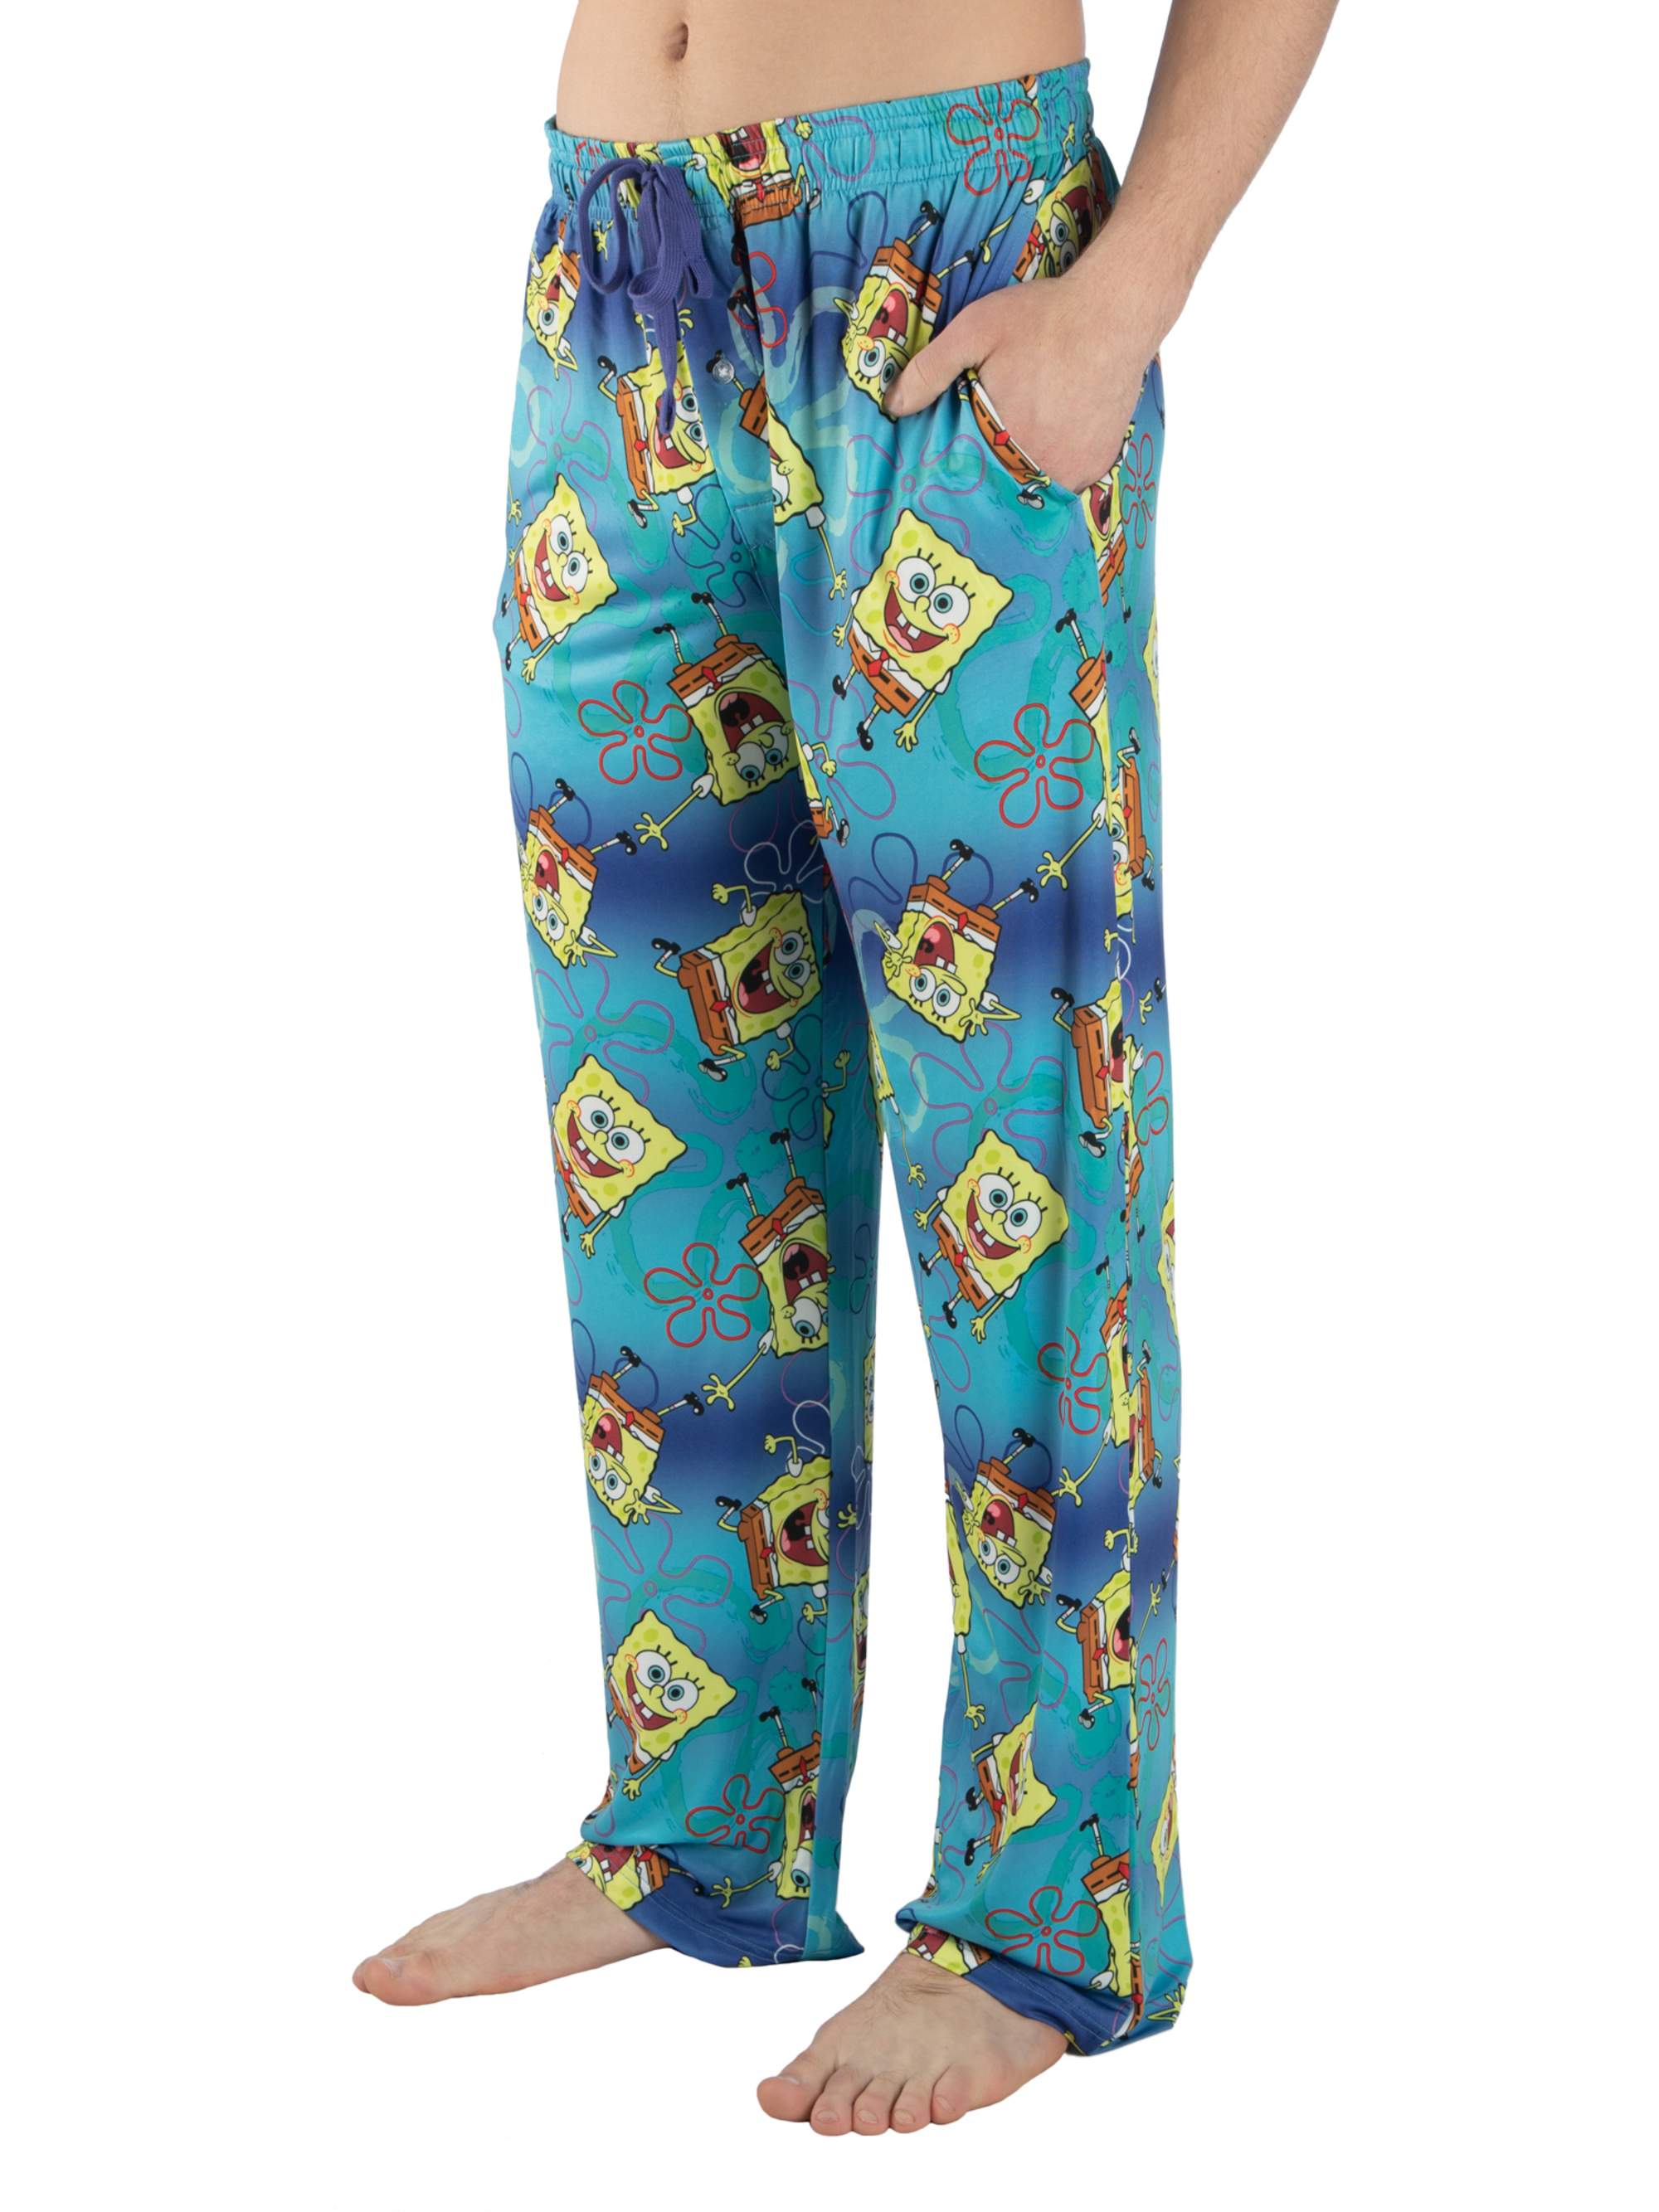 Nickelodeon Men's Spongebob Squarepants Print Pajama Pant - image 1 of 1